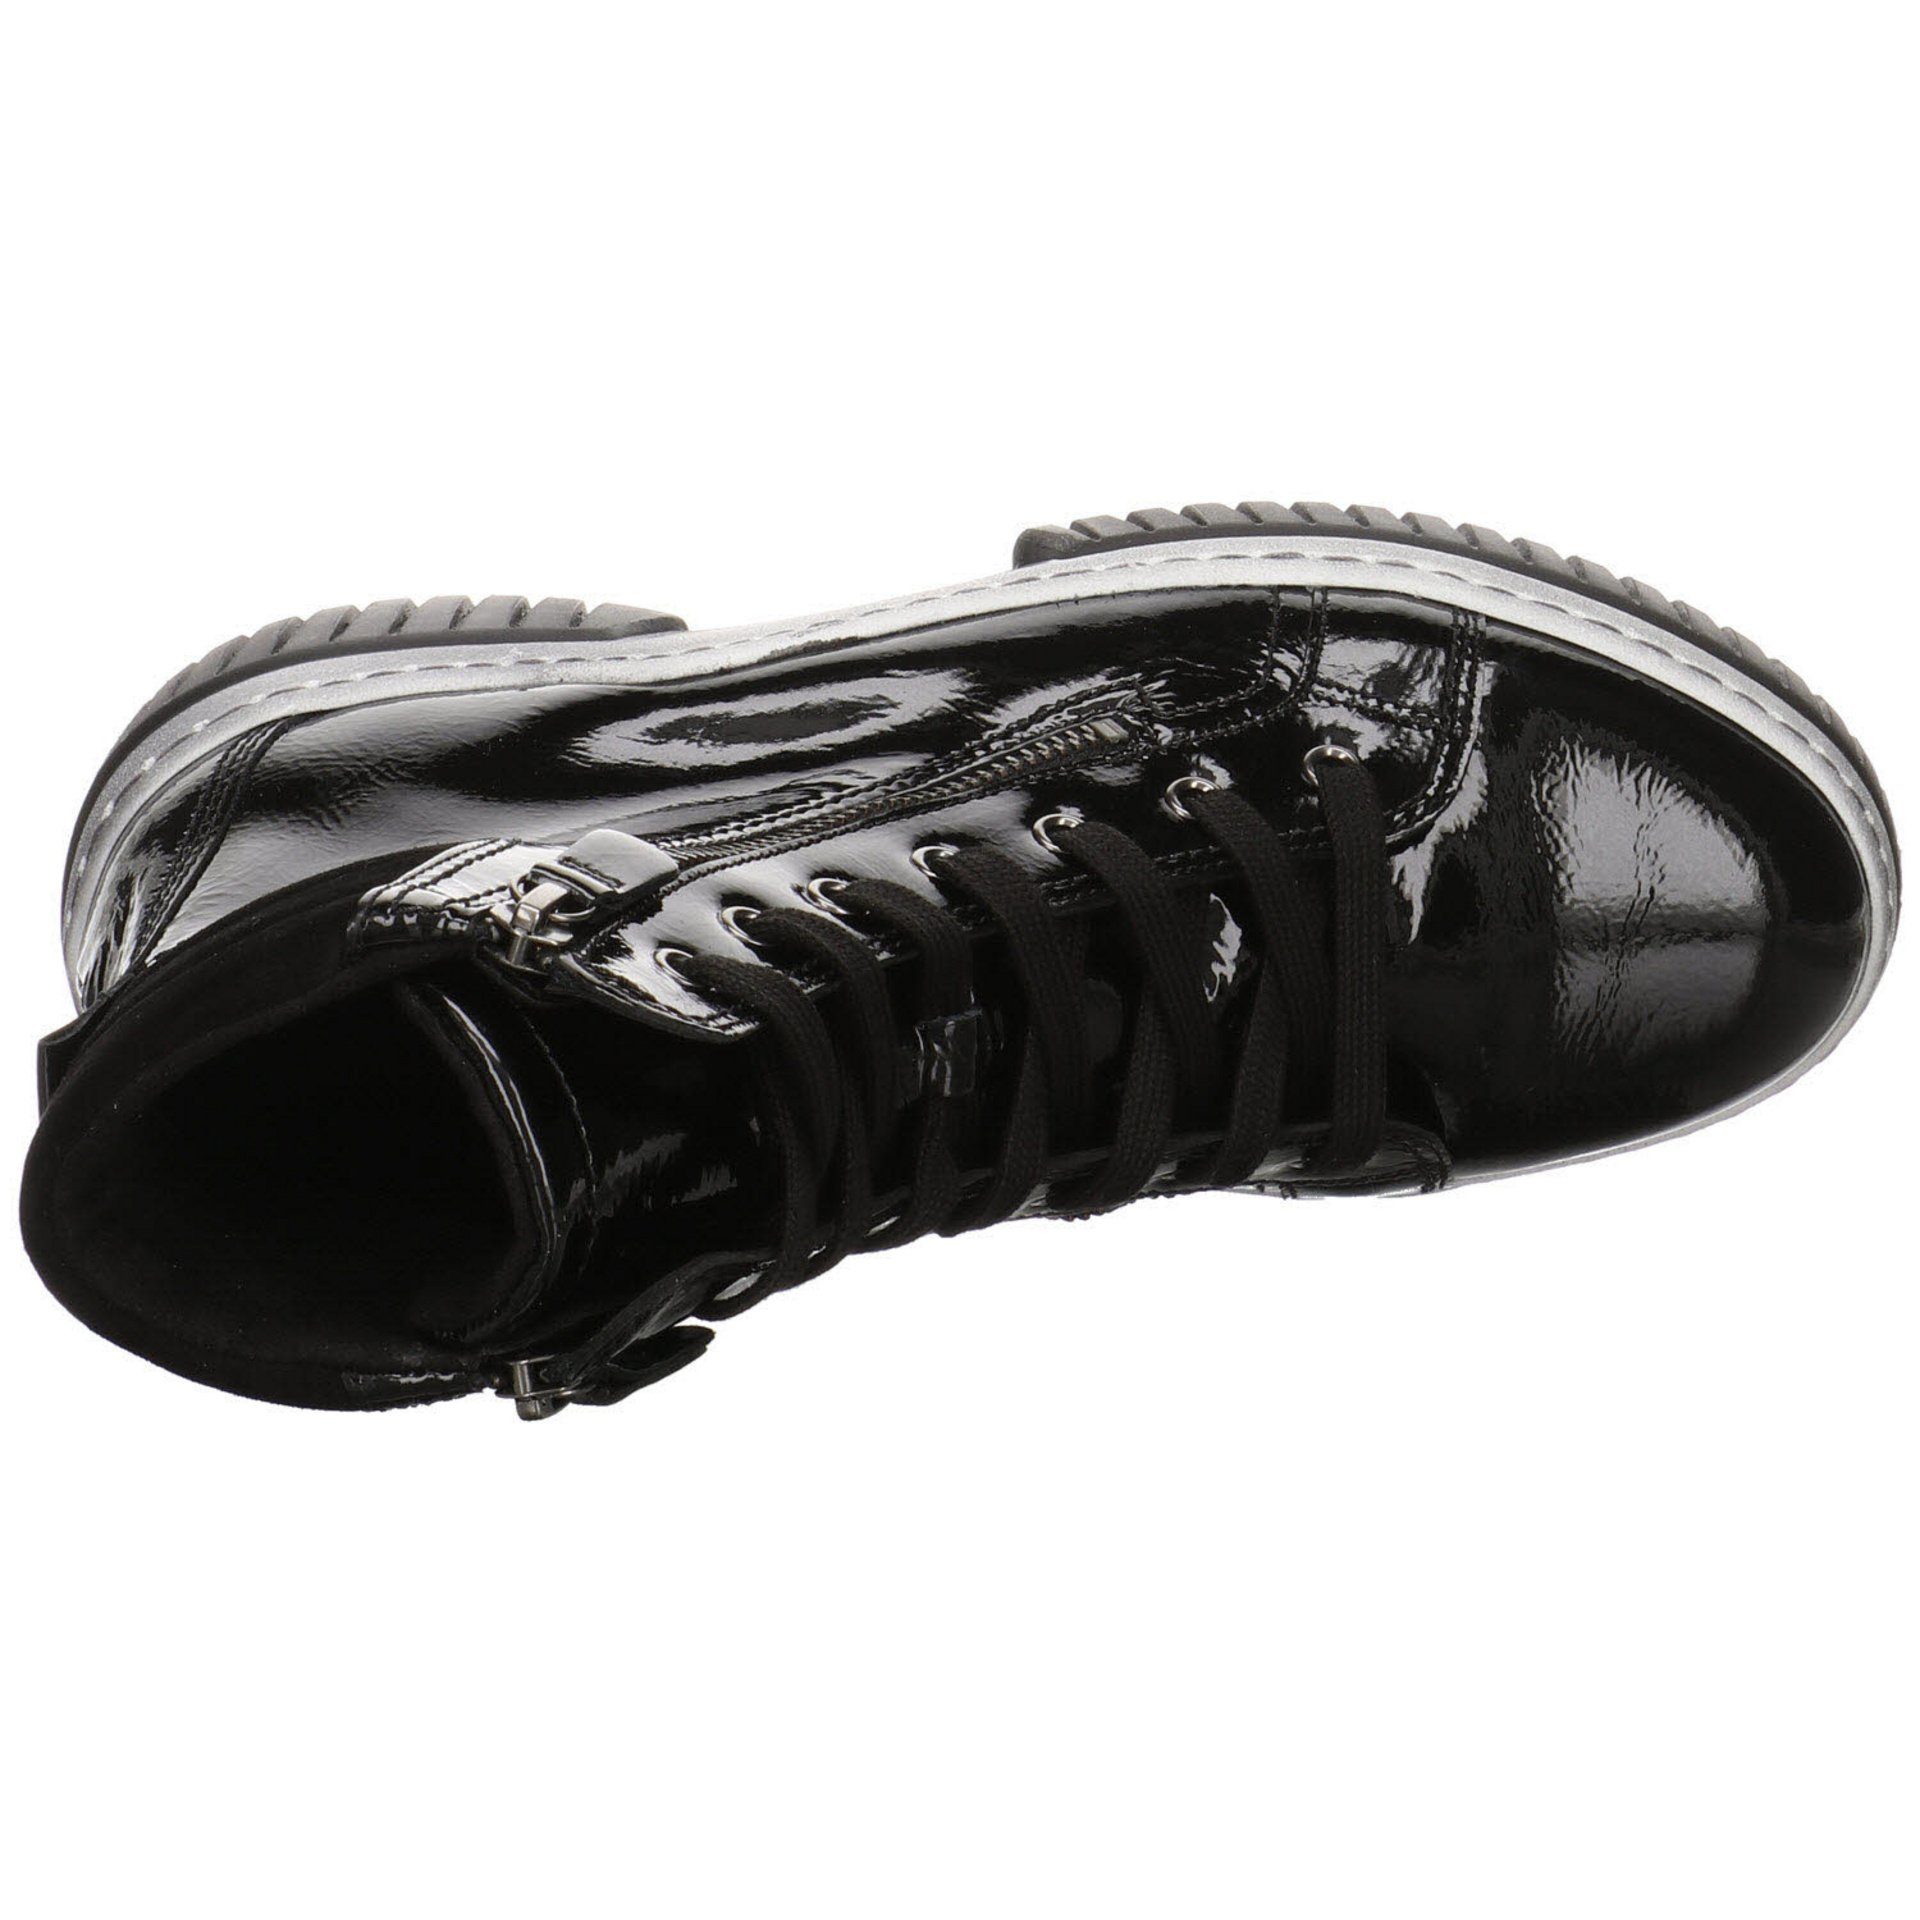 Damen Elegant Schuhe schwarz(altsilber) Lackleder Boots Gabor Schnürstiefel Stiefeletten Freizeit